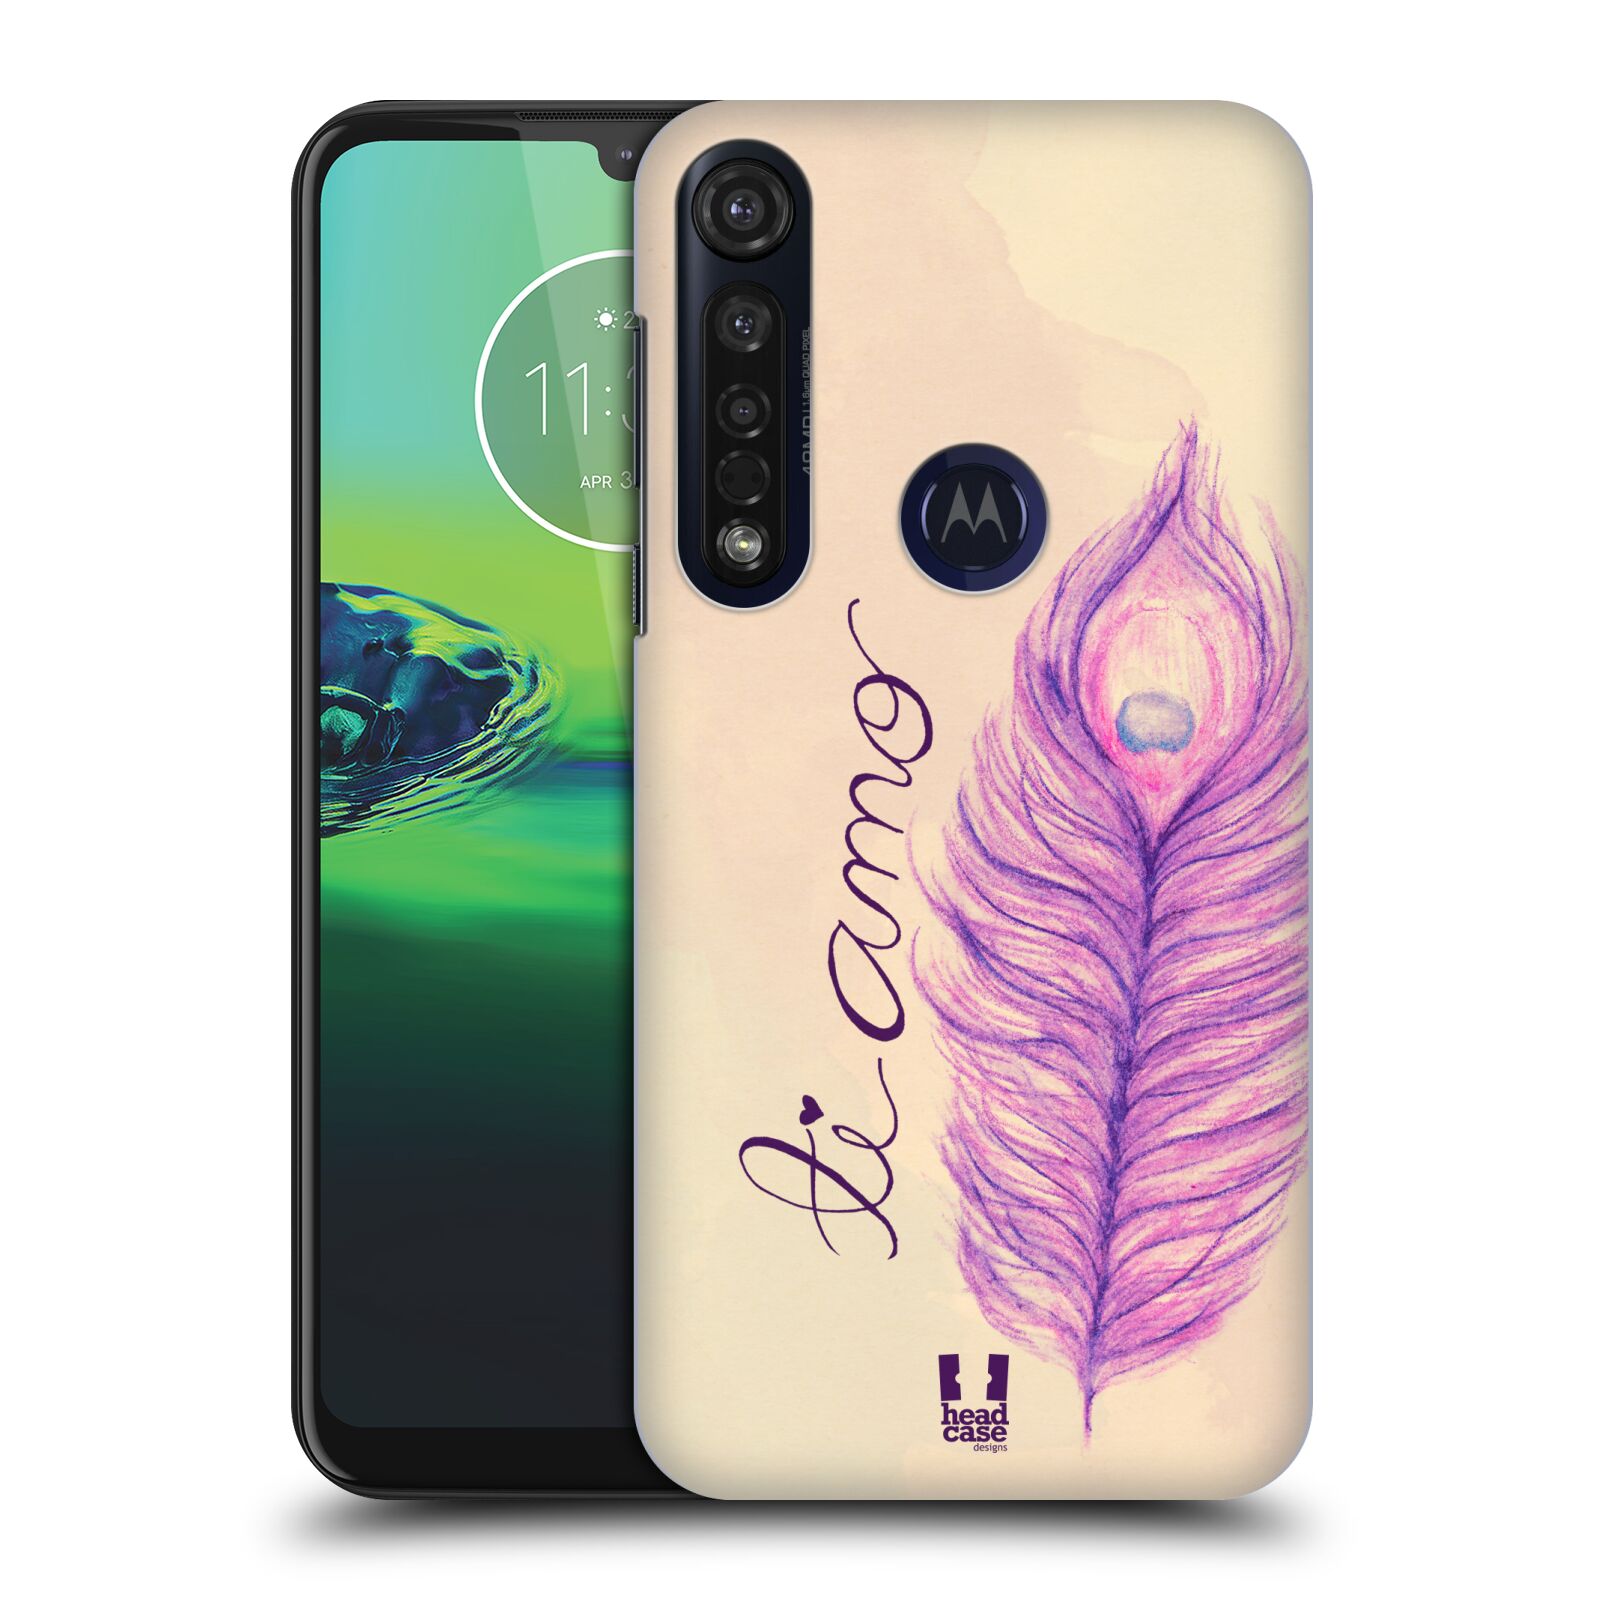 Pouzdro na mobil Motorola Moto G8 PLUS - HEAD CASE - vzor Paví pírka barevná FIALOVÁ TI AMO